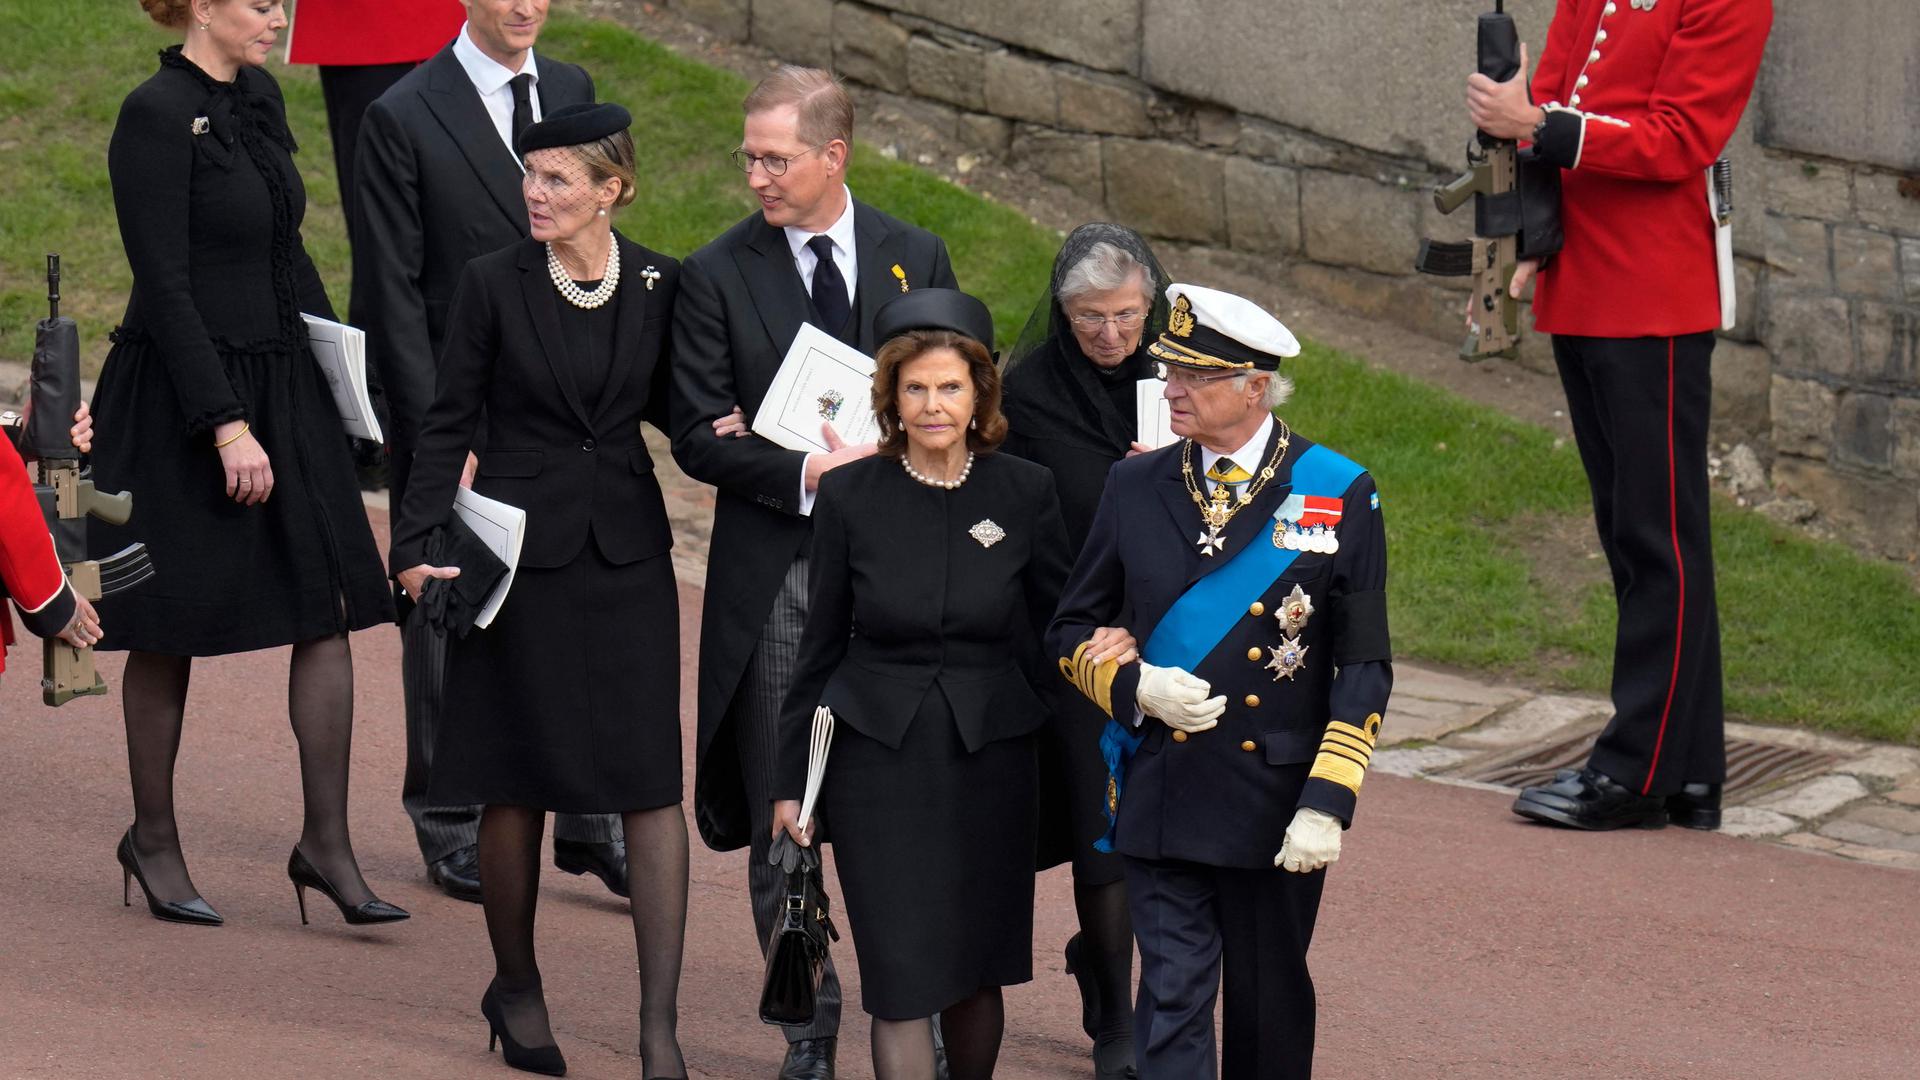 Bernhard Prinz von Baden (Mitte) nimmt mit seiner Frau, Prinzessin Stephanie, sowie seiner Mutter, Markgräfin Valerie, am Aussegnungsgottesdienst für Queen Elizabeth II. auf Schloss Windsor teil. Vor ihnen laufen Carl Gustav, König von Schweden, und seine Frau, Königin Silvia.